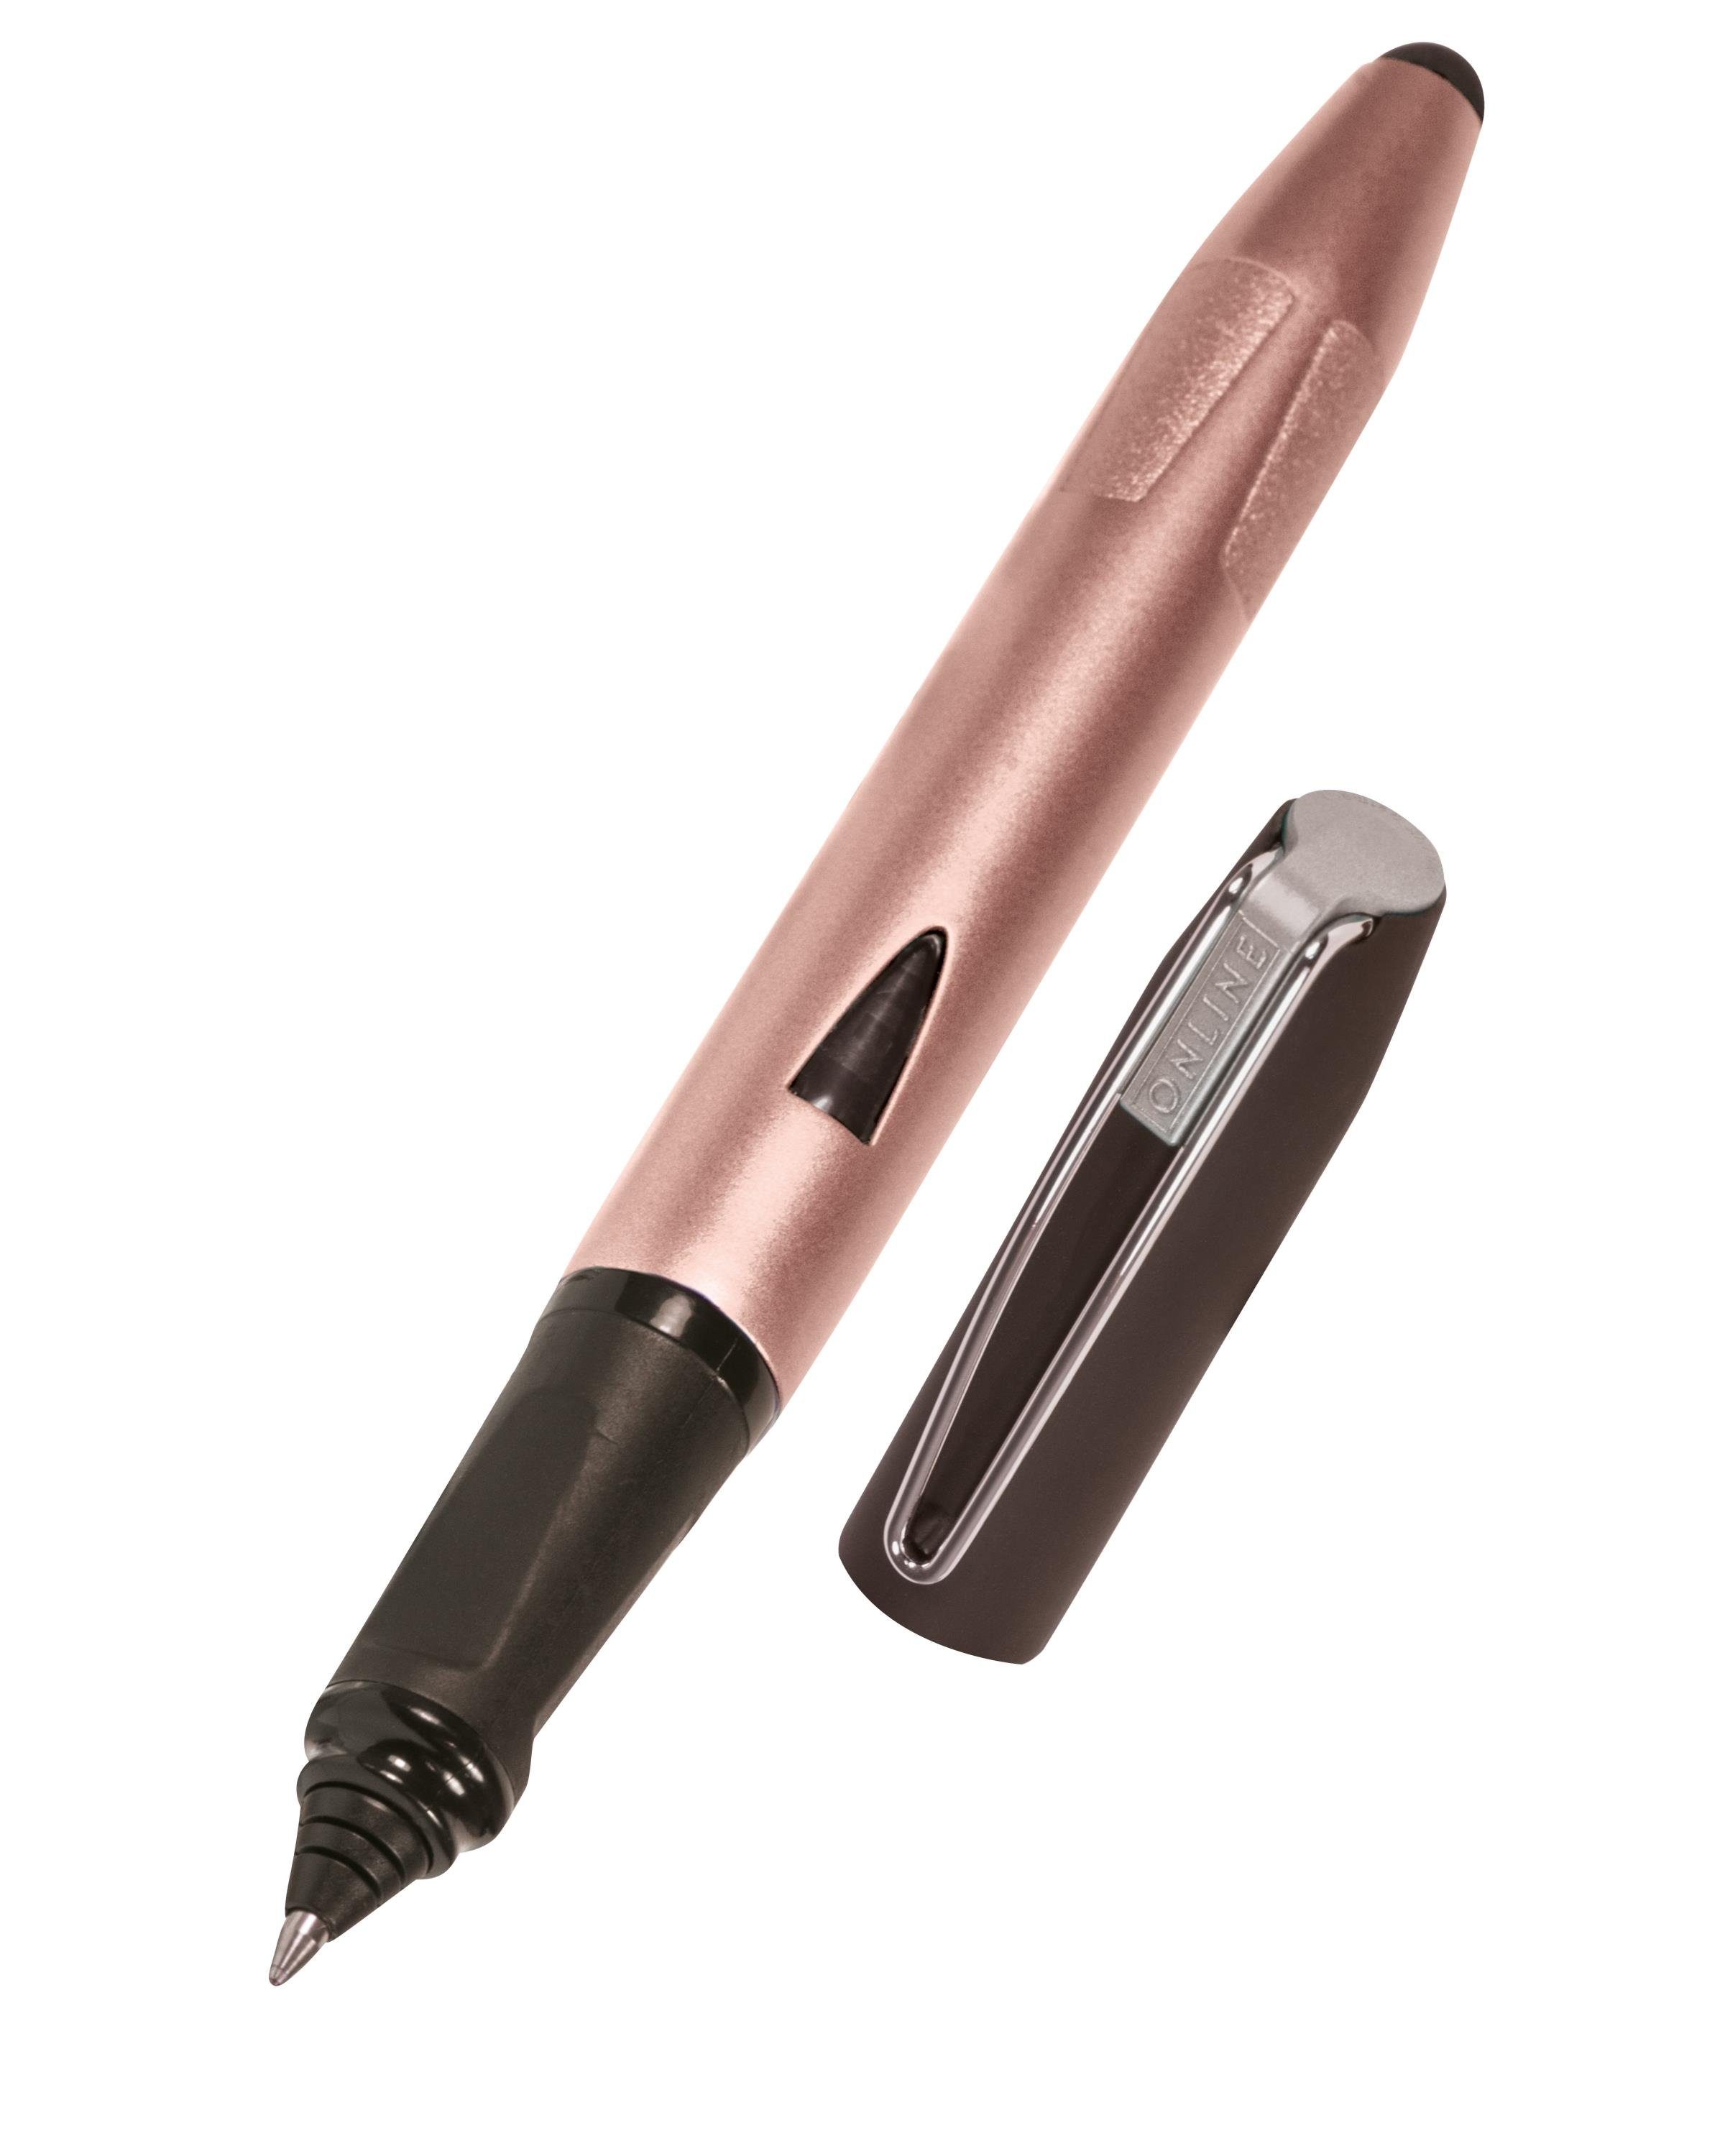 Online Pen Tintenroller Switch Rosegold ergonomisch, für die Plus, ideal Schule, mit Stylus-Tip